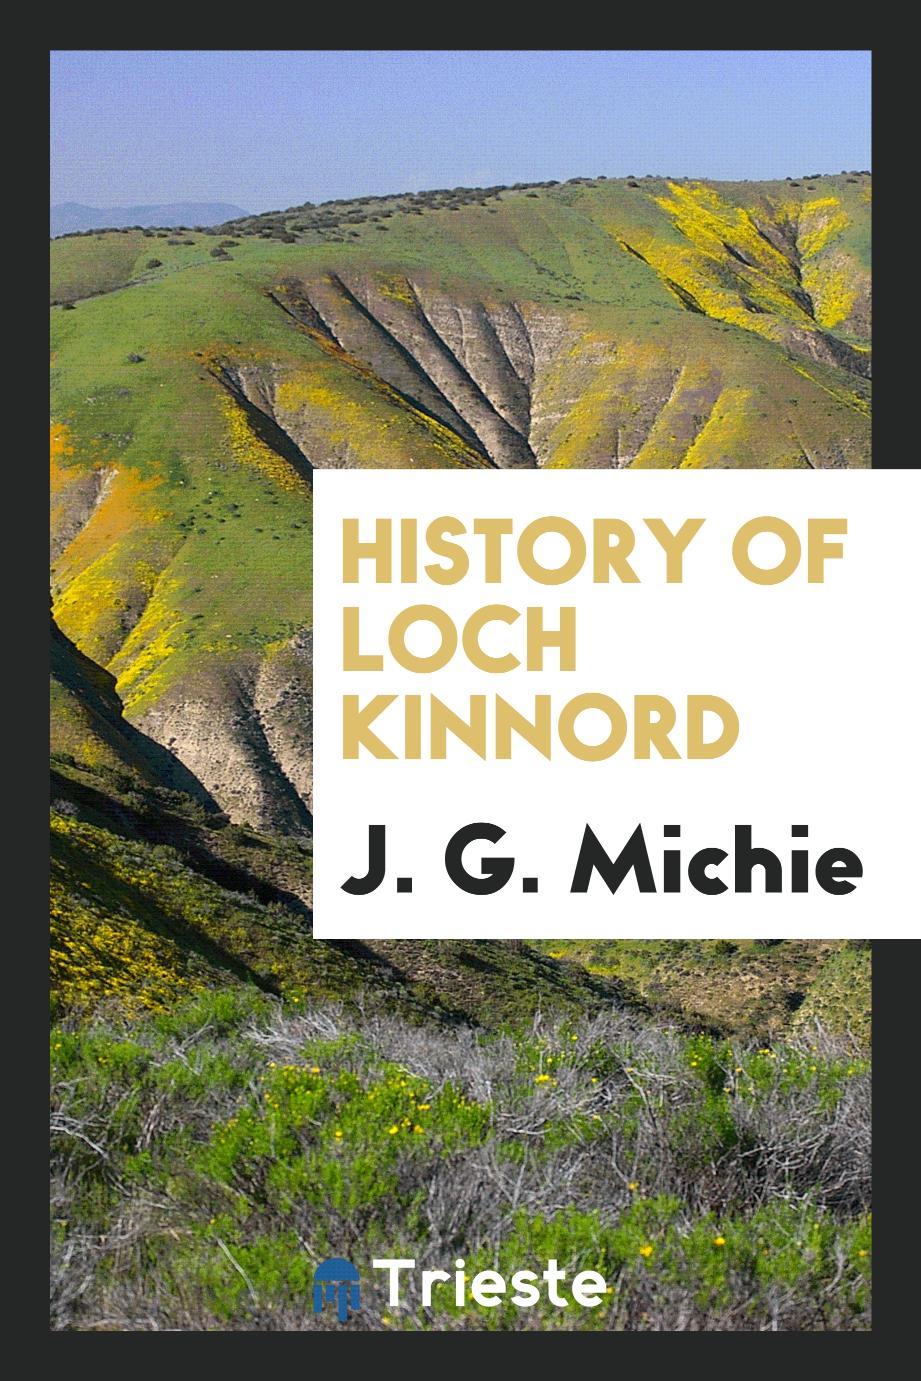 History of Loch Kinnord